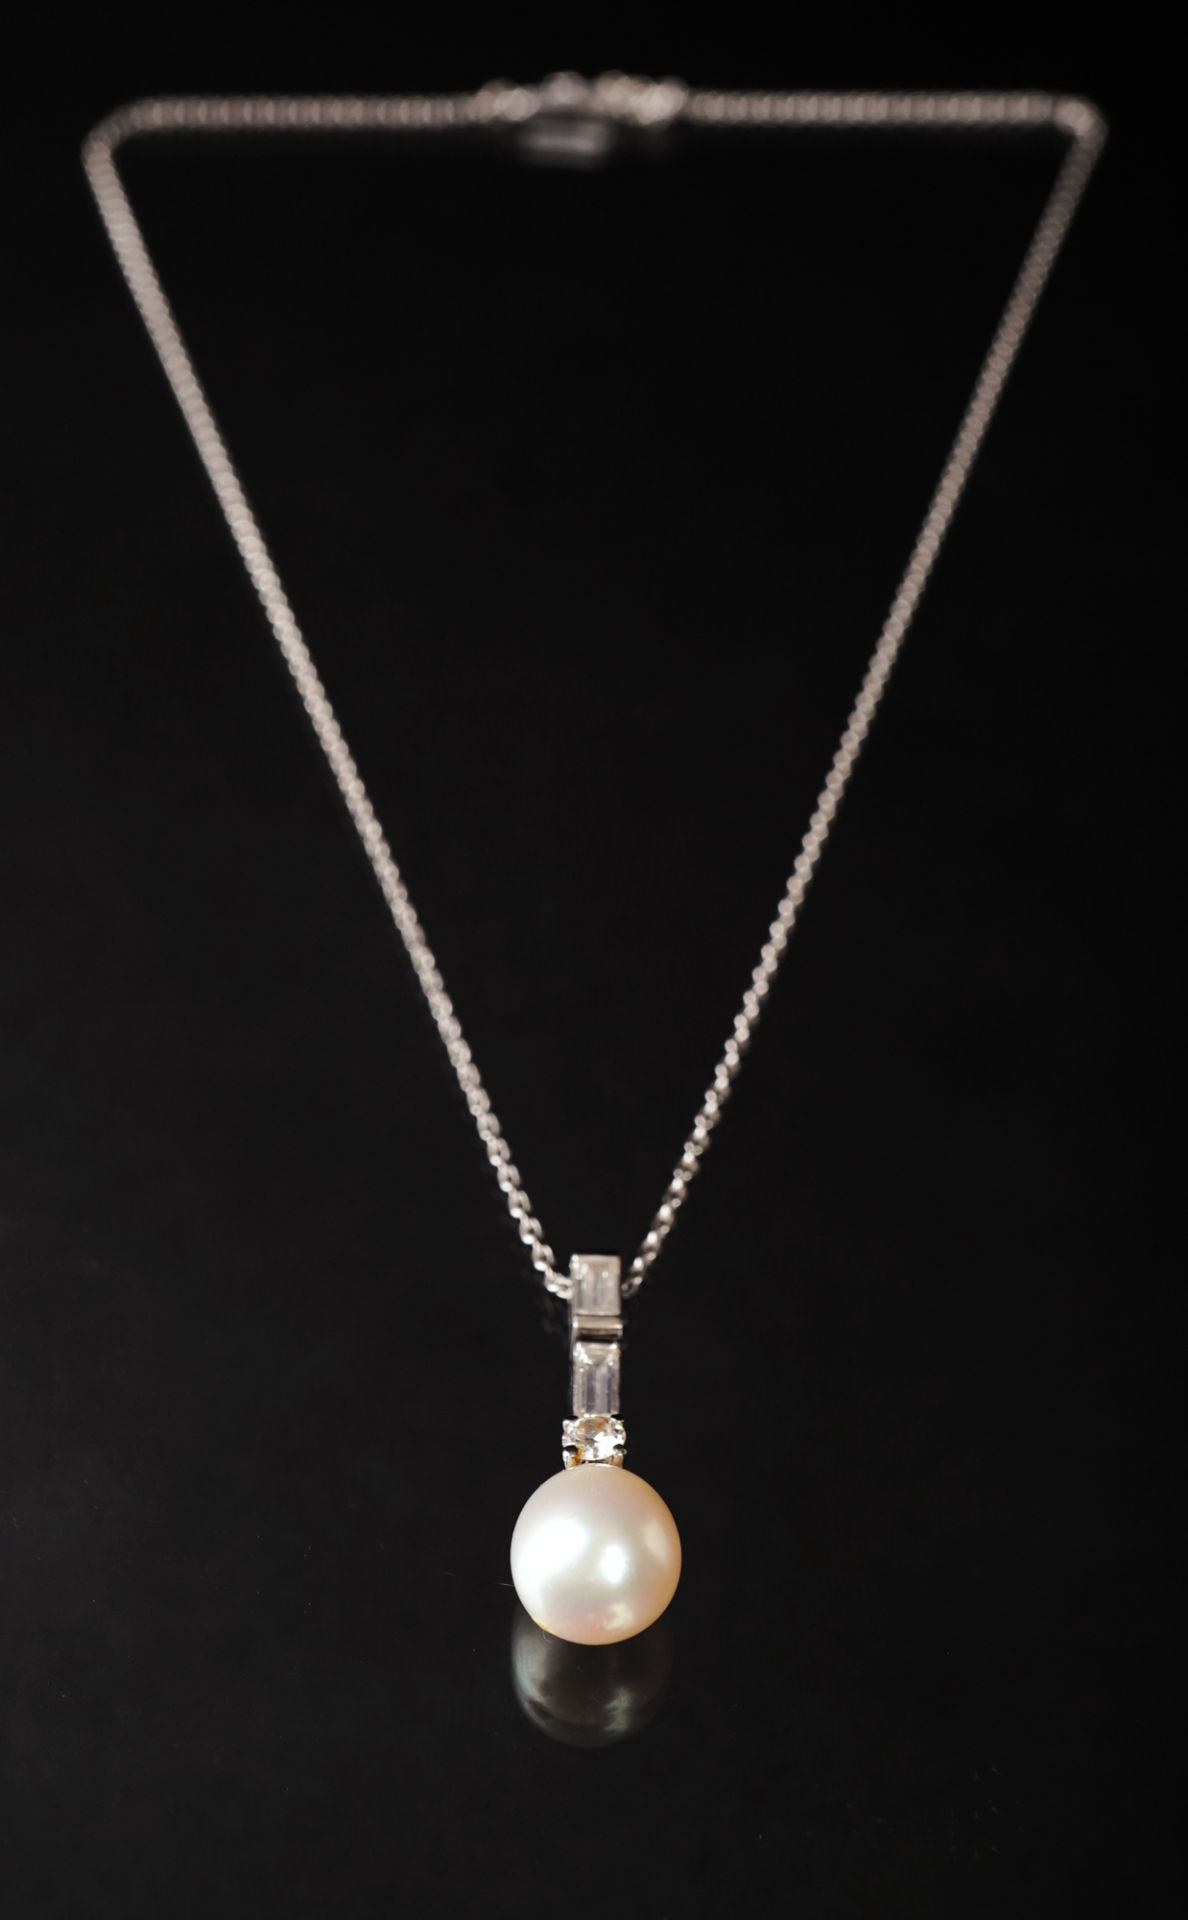 Anhänger mit Perle und Diamantbesatz an Kette, WG 585 - Image 2 of 6